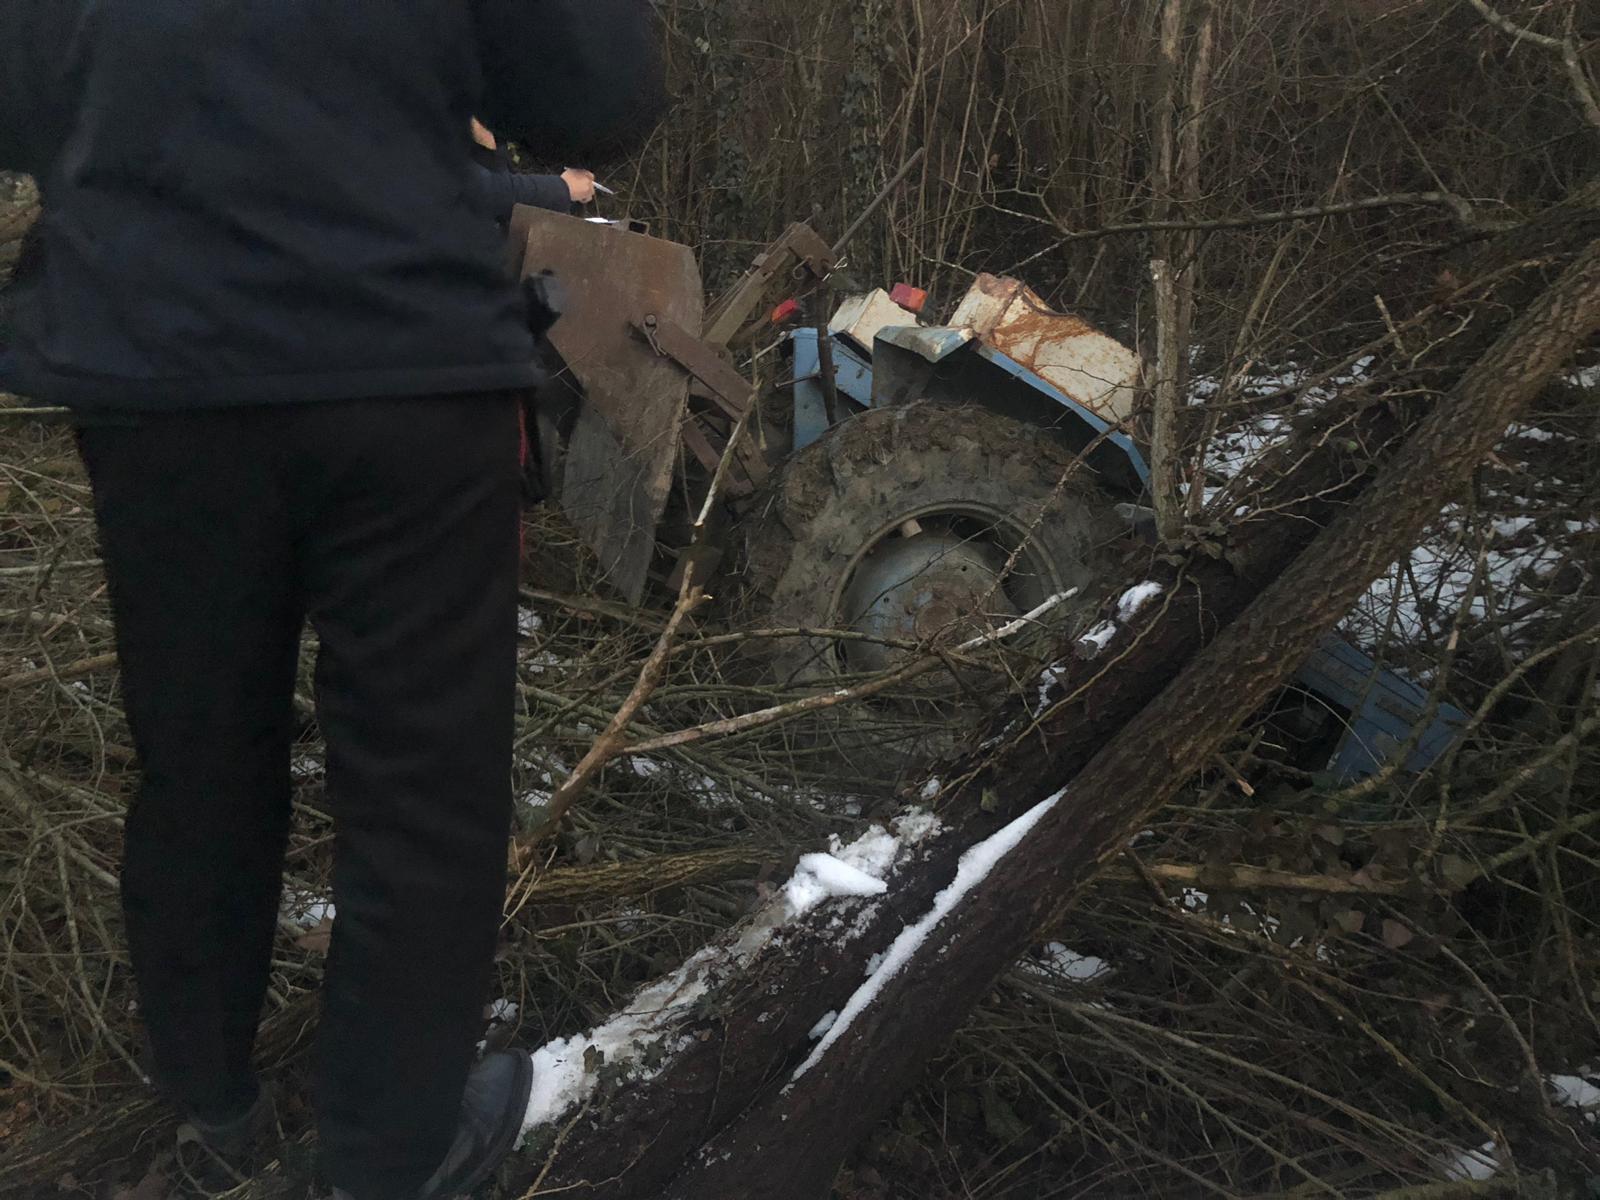 Travolto dal trattore in campagna, ex cantoniere gravissimo al Cto. L'incidente è accaduto nel pomeriggio di ieri, mercoledì 6 febbraio 2019.